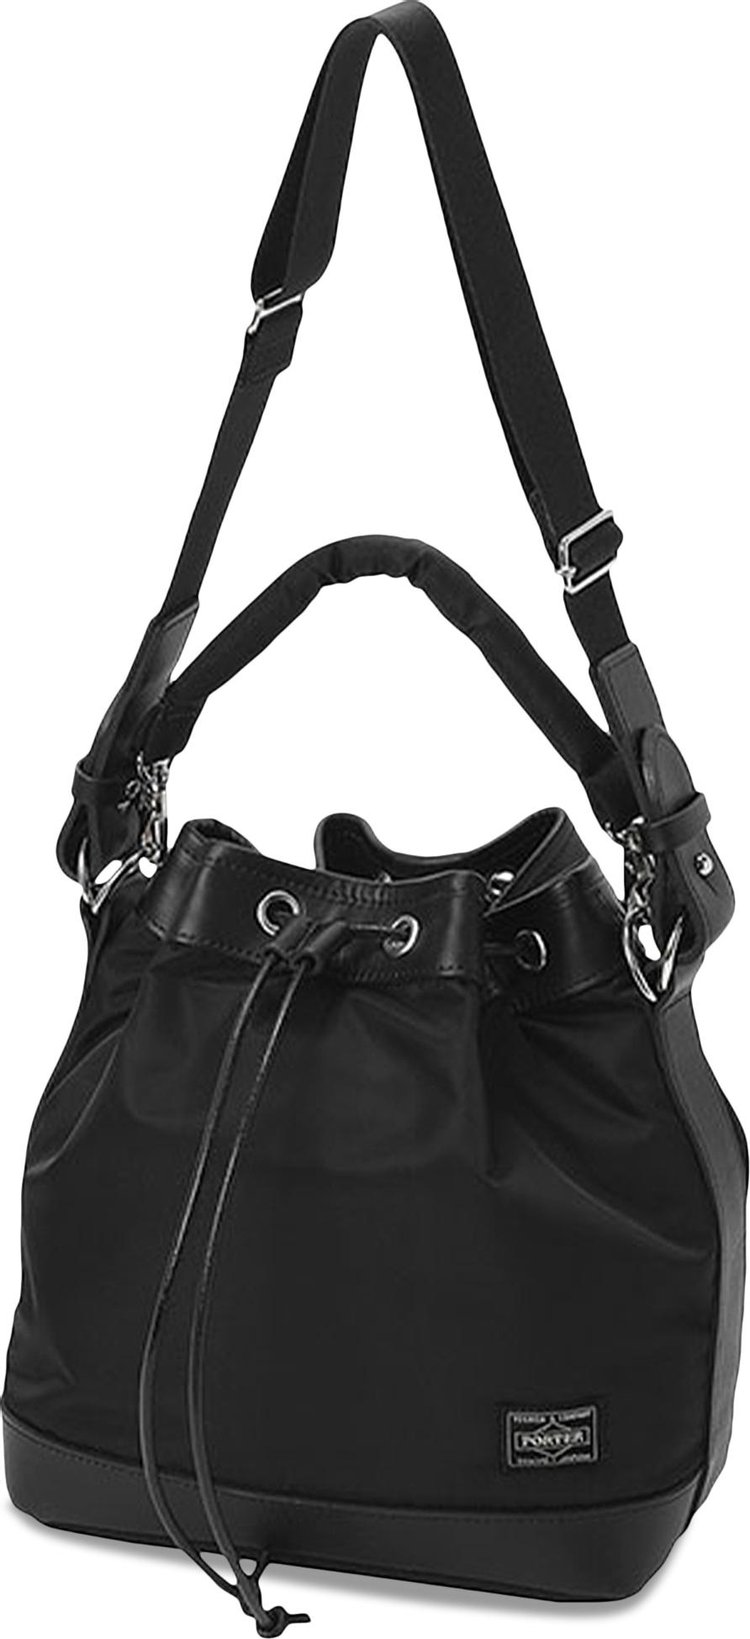 Porter-Yoshida & Co. Drawstring Bag 'Black'